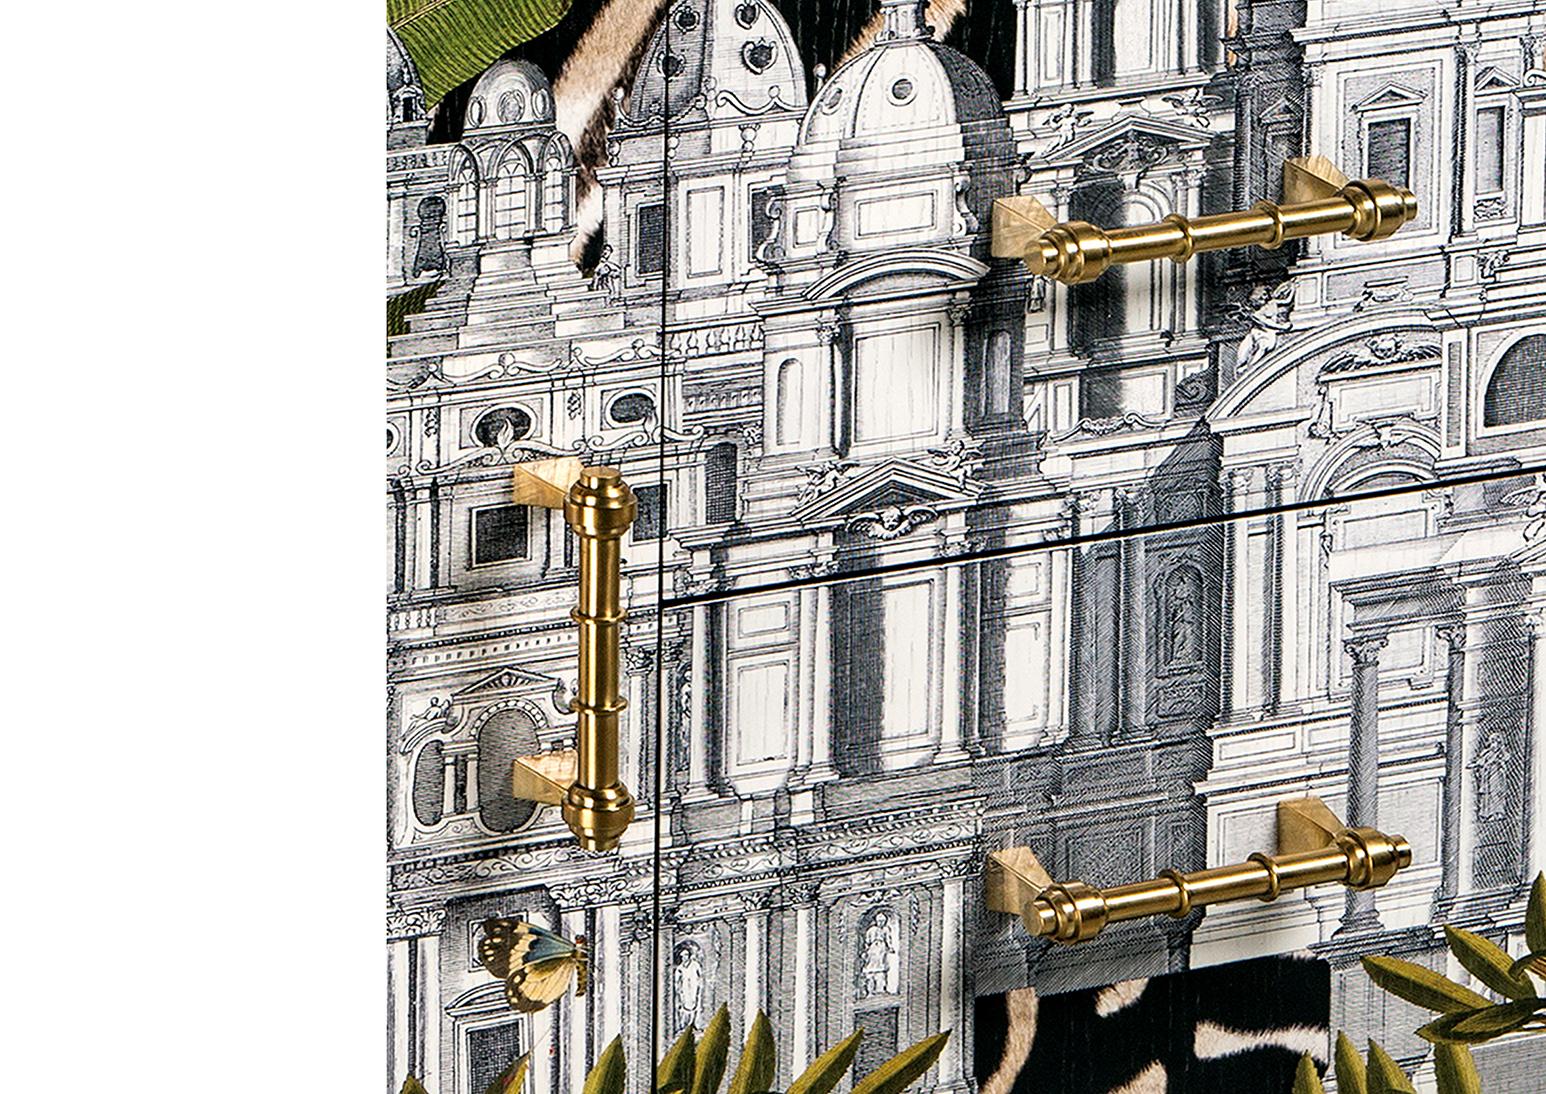 Schwarz lackiertes 6-türiges Sideboard mit Dschungelmotiv und Griffen aus Messingguss. Brilliante zinnoberrote Innenausstattung, handgefertigt in Florenz, Italien.
Handgefertigter Holzrahmen mit direkt auf die Vorderseite gedrucktem tropischen Bild.